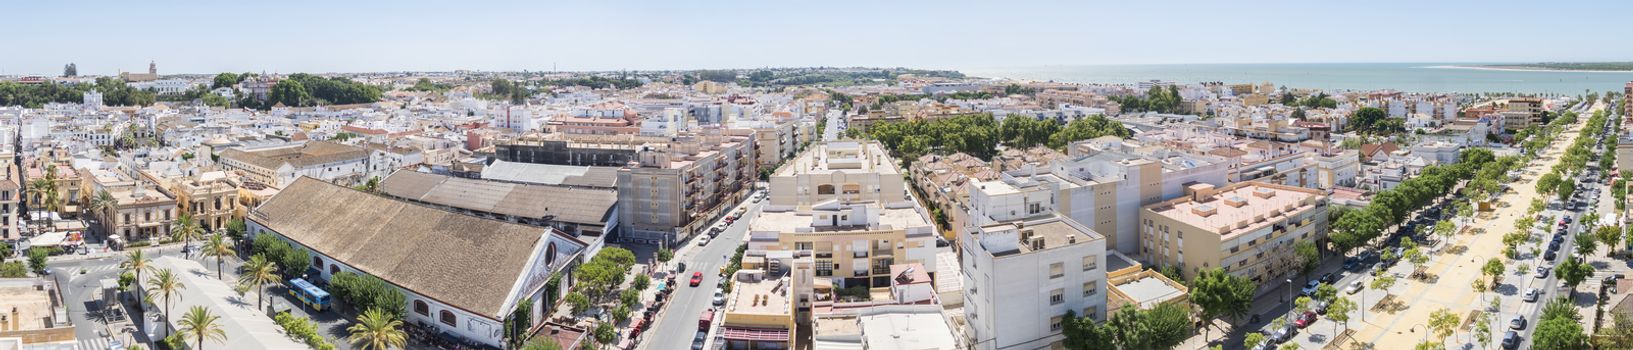 Aerial panoramic view of Sanlucar de Barrameda, Cadiz, Spain